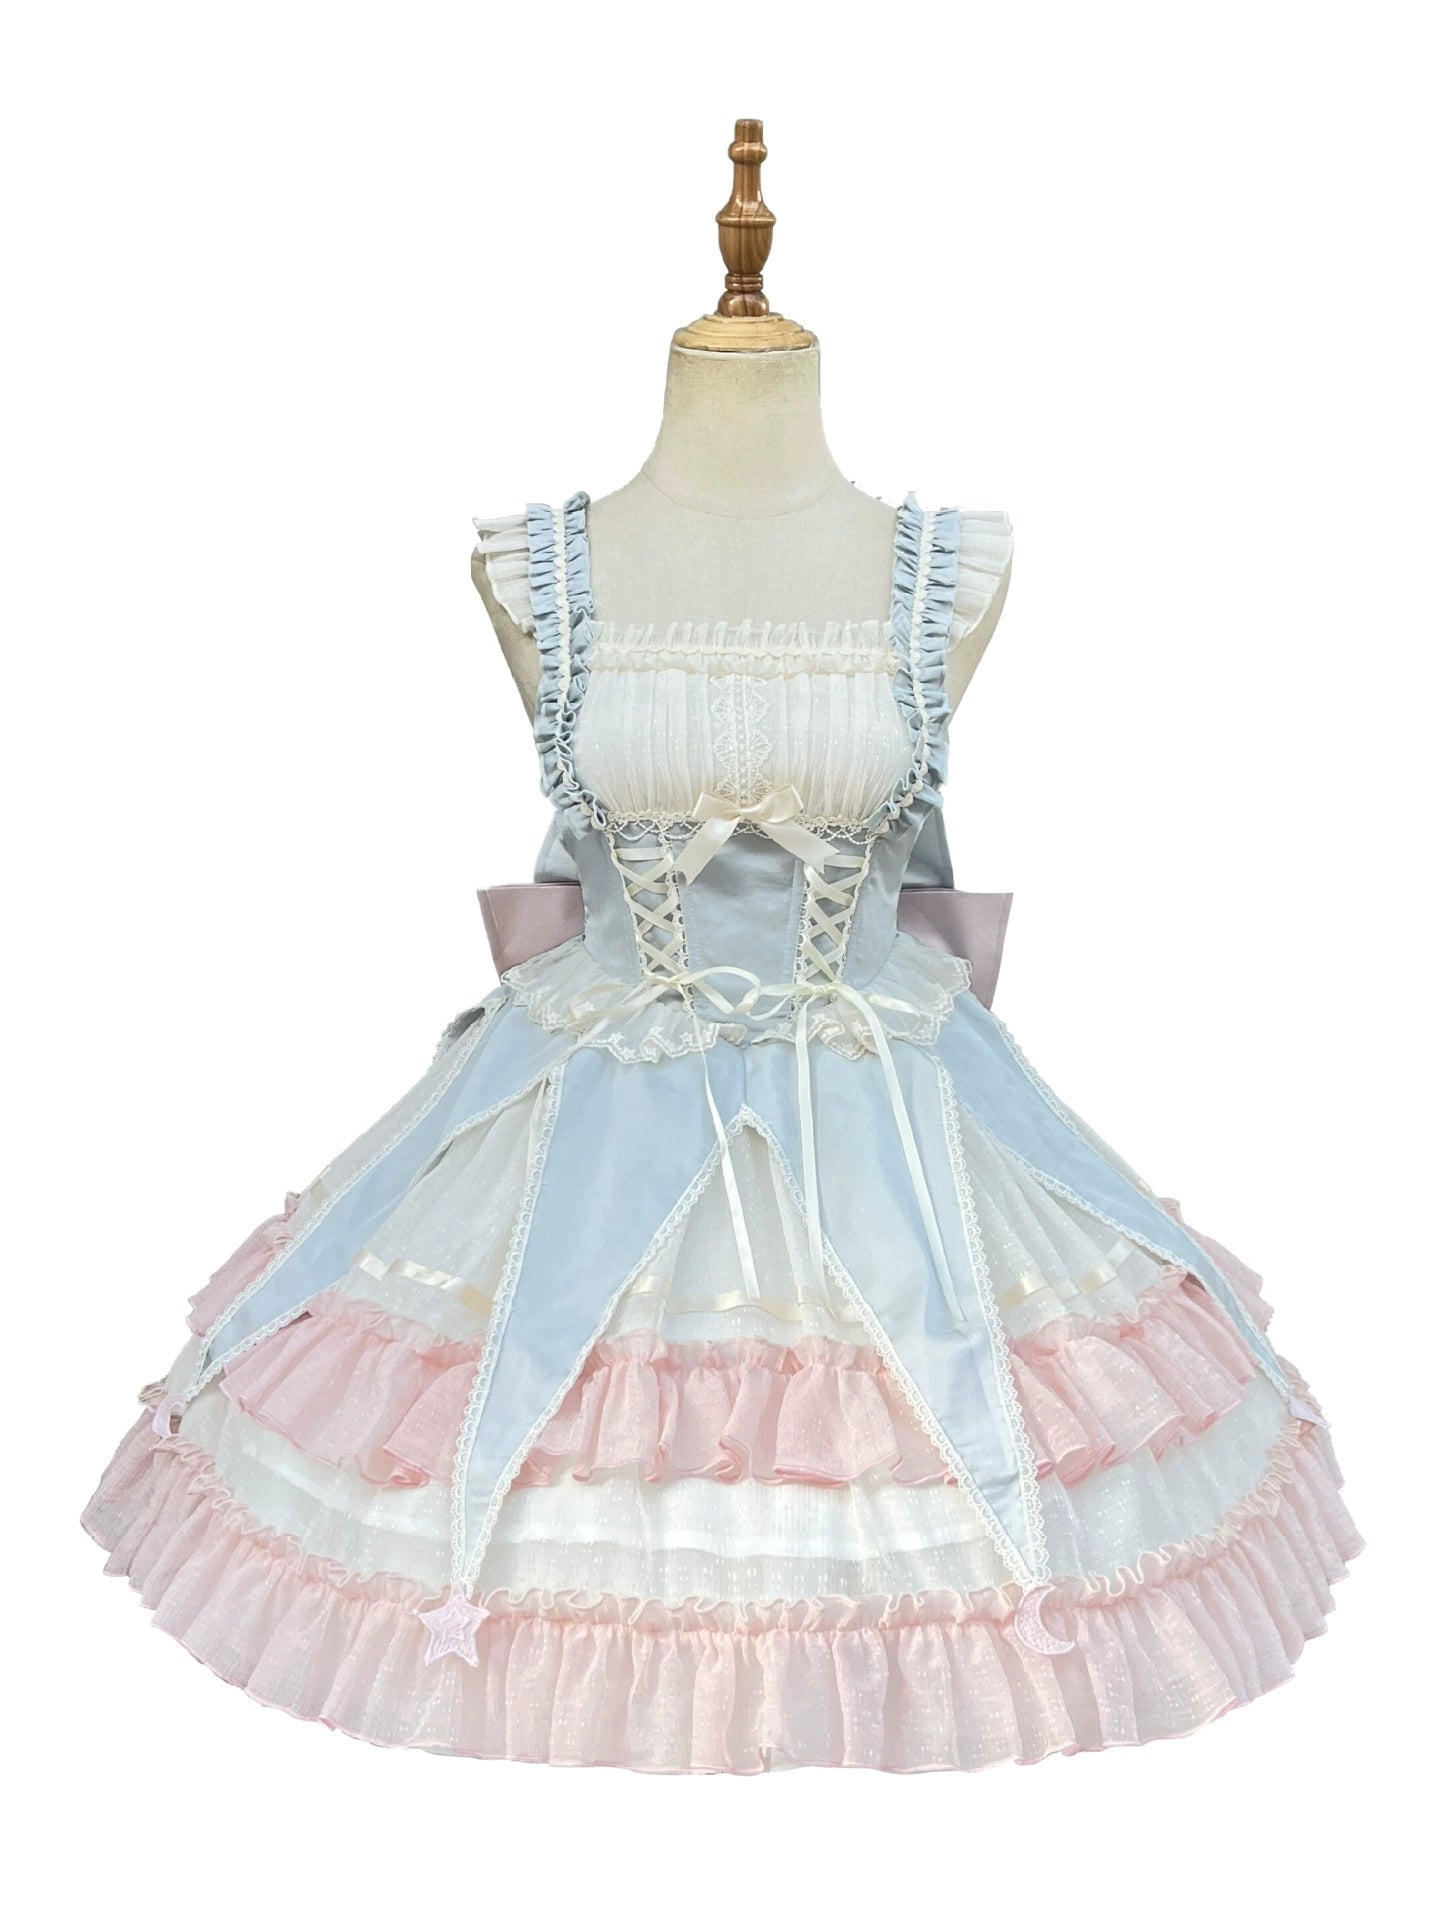 原创洛丽塔公主裙日常连衣裙甜美可爱花朵婚礼芭蕾马戏团洛丽塔连衣裙夏季